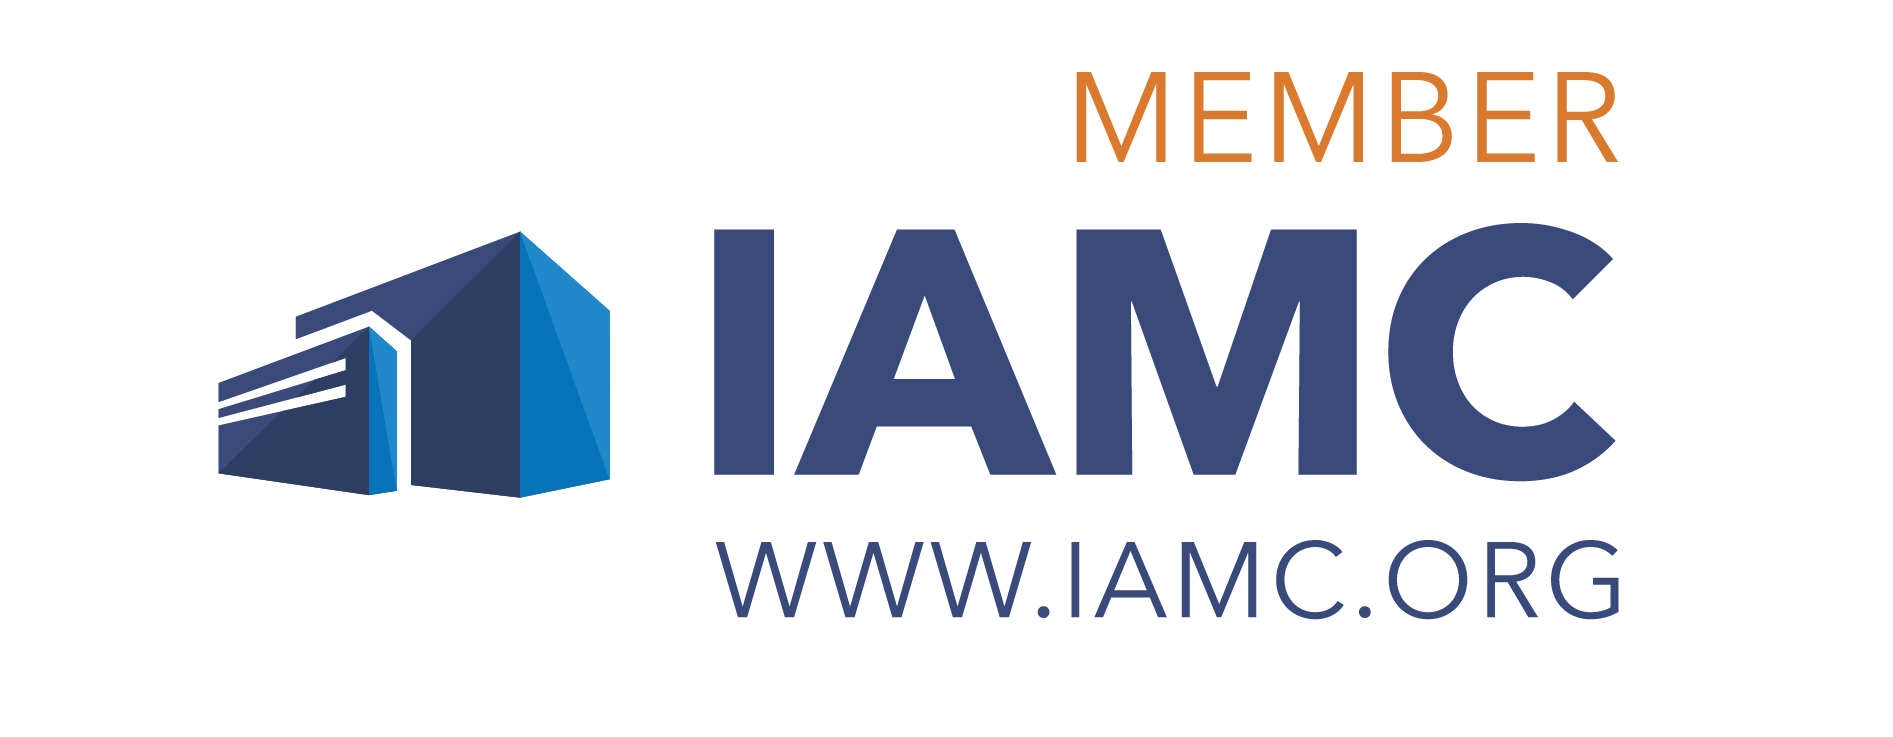 IAMC_member-250